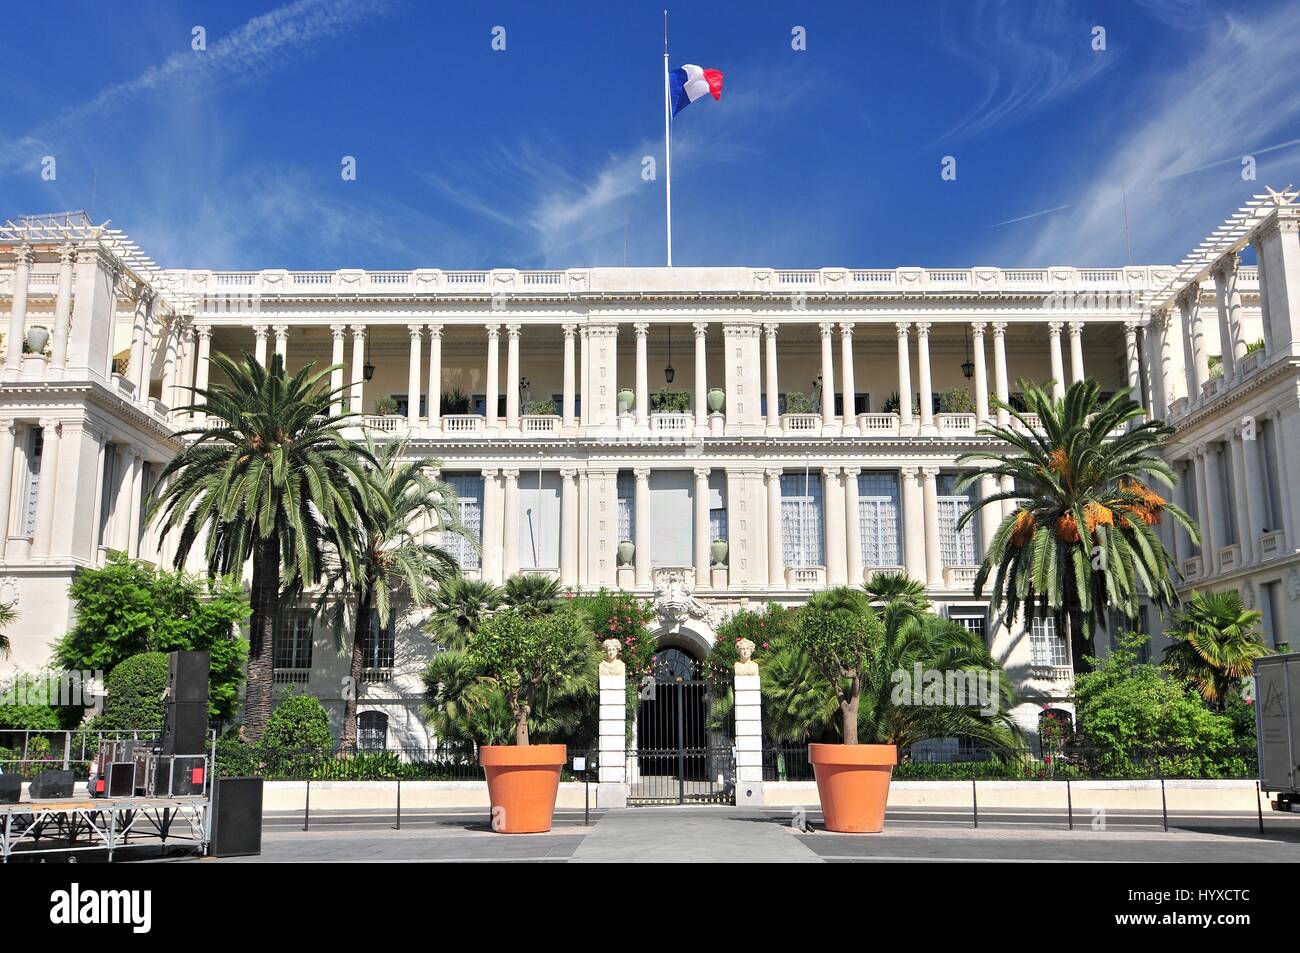 Palais des Ducs de savoie, Nice, French Riviera, Provence, France Stock Photo